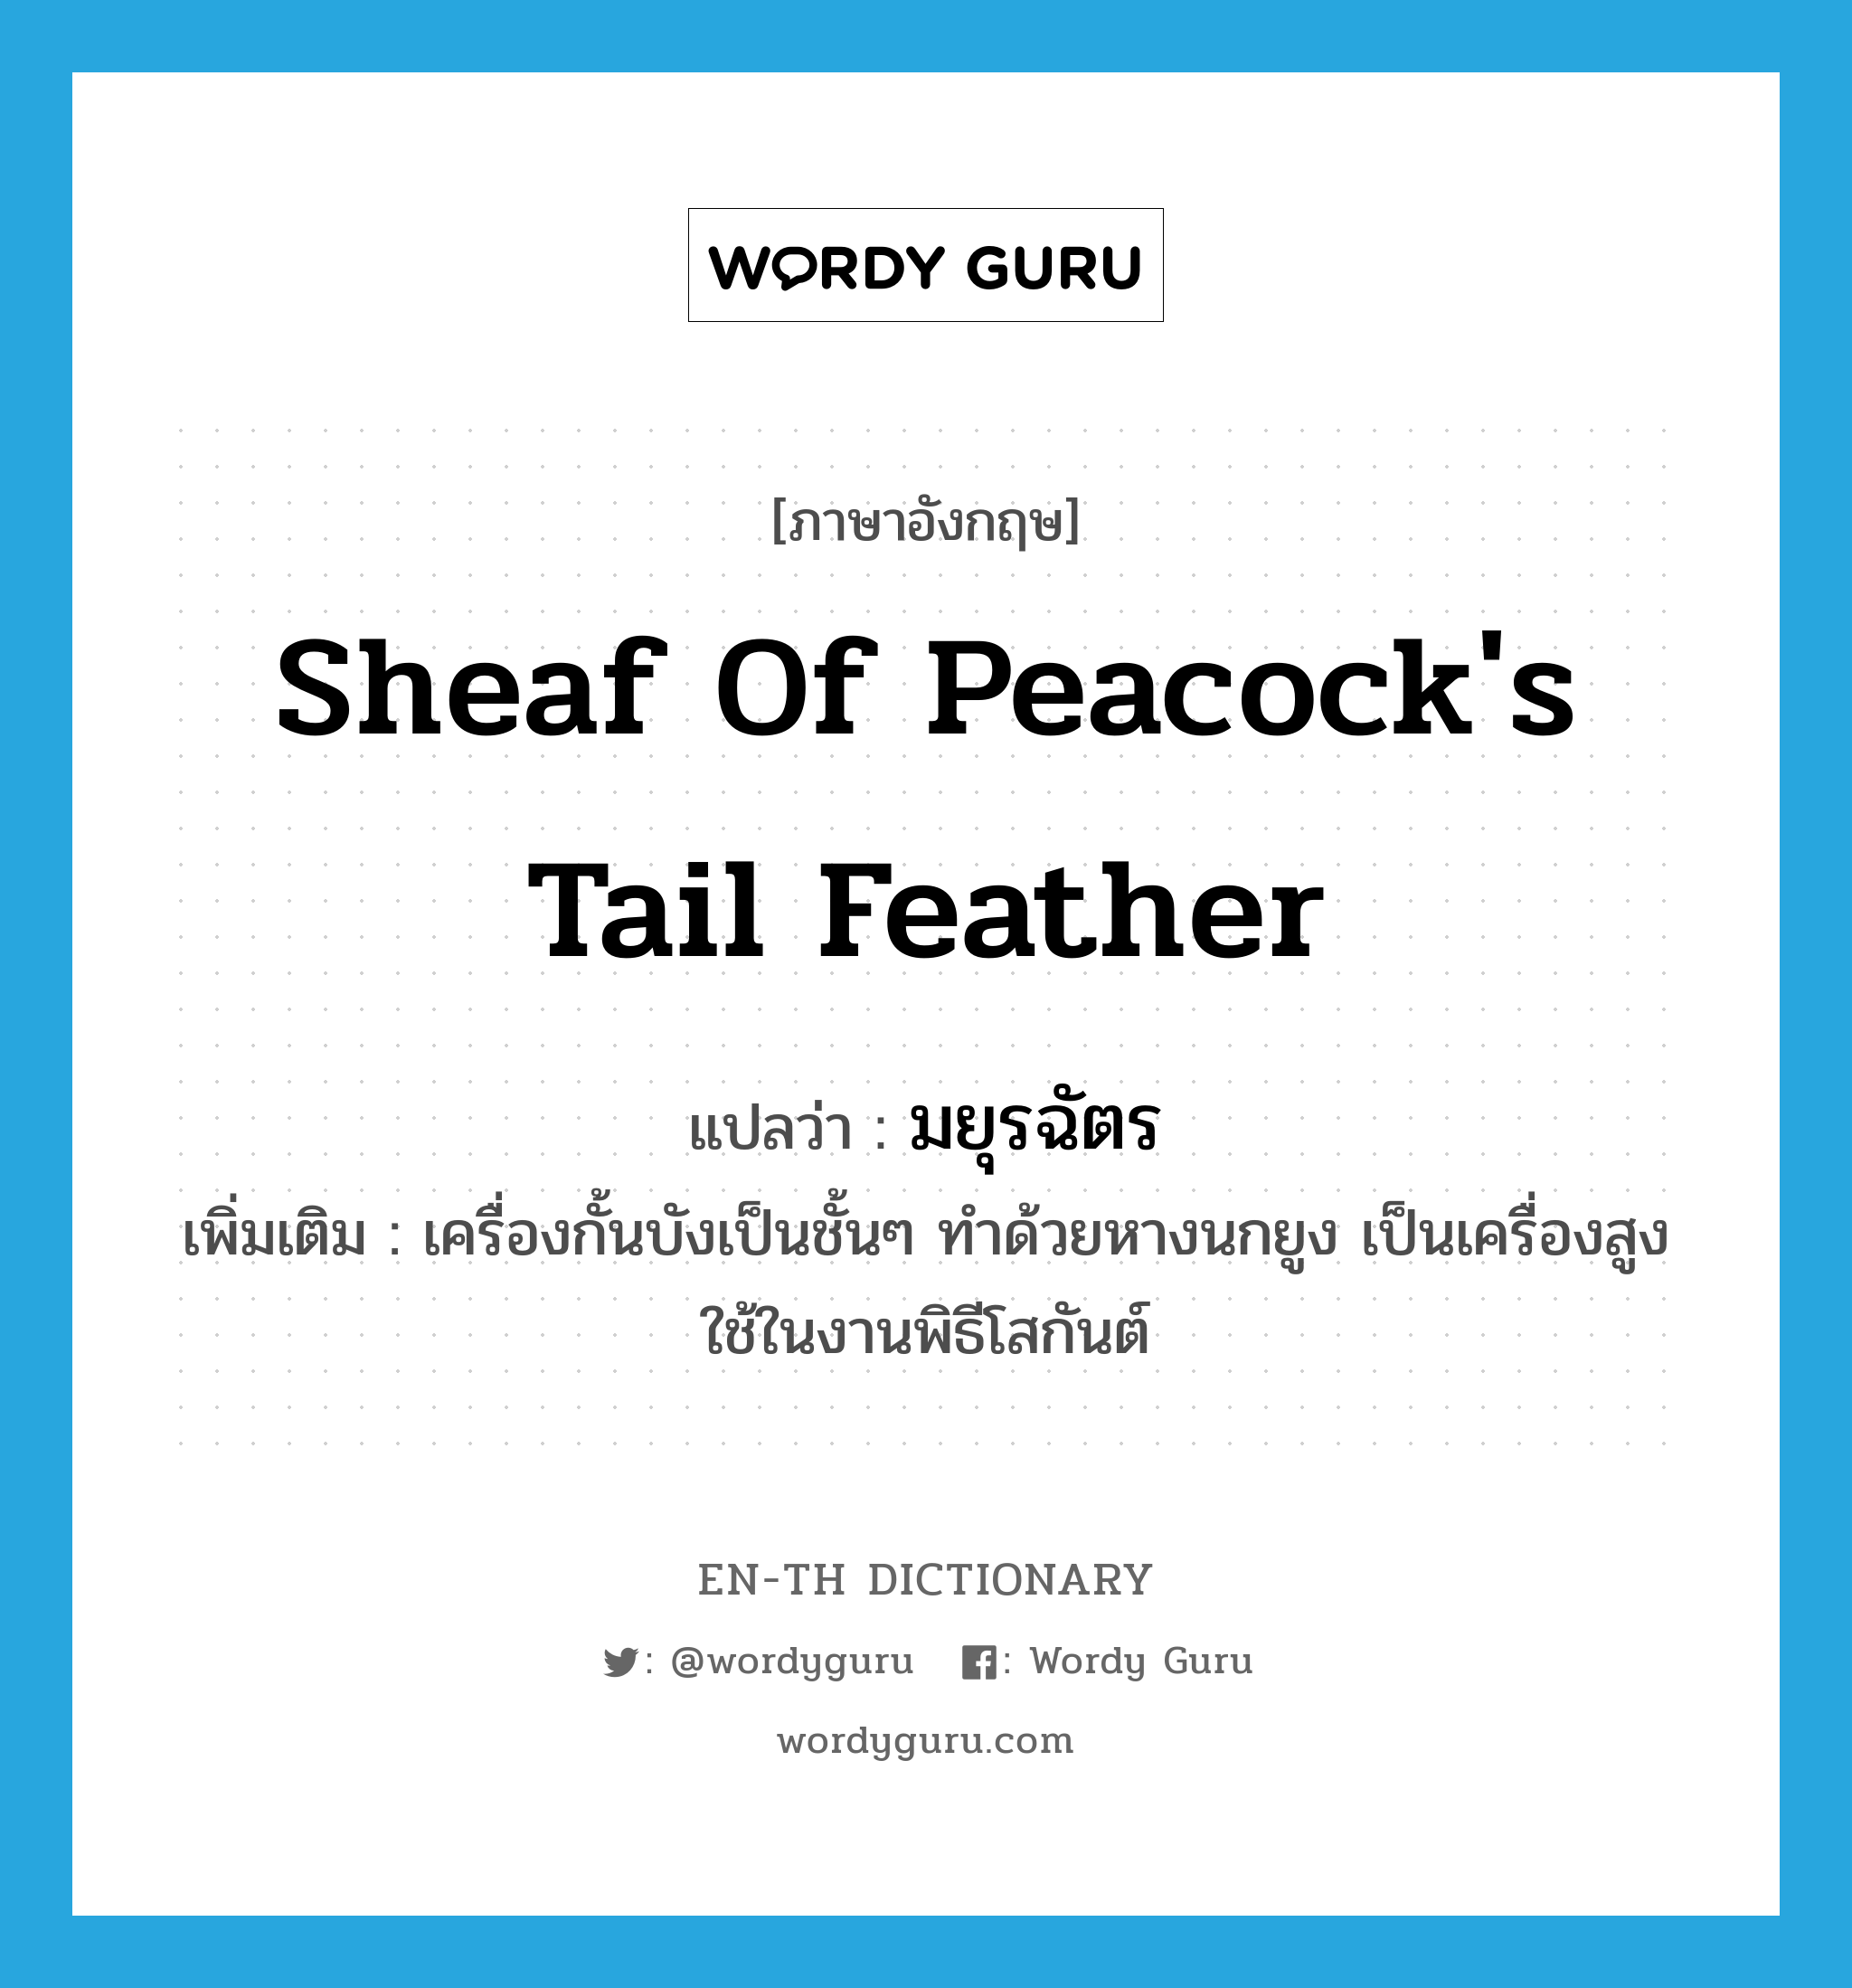 มยุรฉัตร ภาษาอังกฤษ?, คำศัพท์ภาษาอังกฤษ มยุรฉัตร แปลว่า sheaf of peacock's tail feather ประเภท N เพิ่มเติม เครื่องกั้นบังเป็นชั้นๆ ทำด้วยหางนกยูง เป็นเครื่องสูงใช้ในงานพิธีโสกันต์ หมวด N